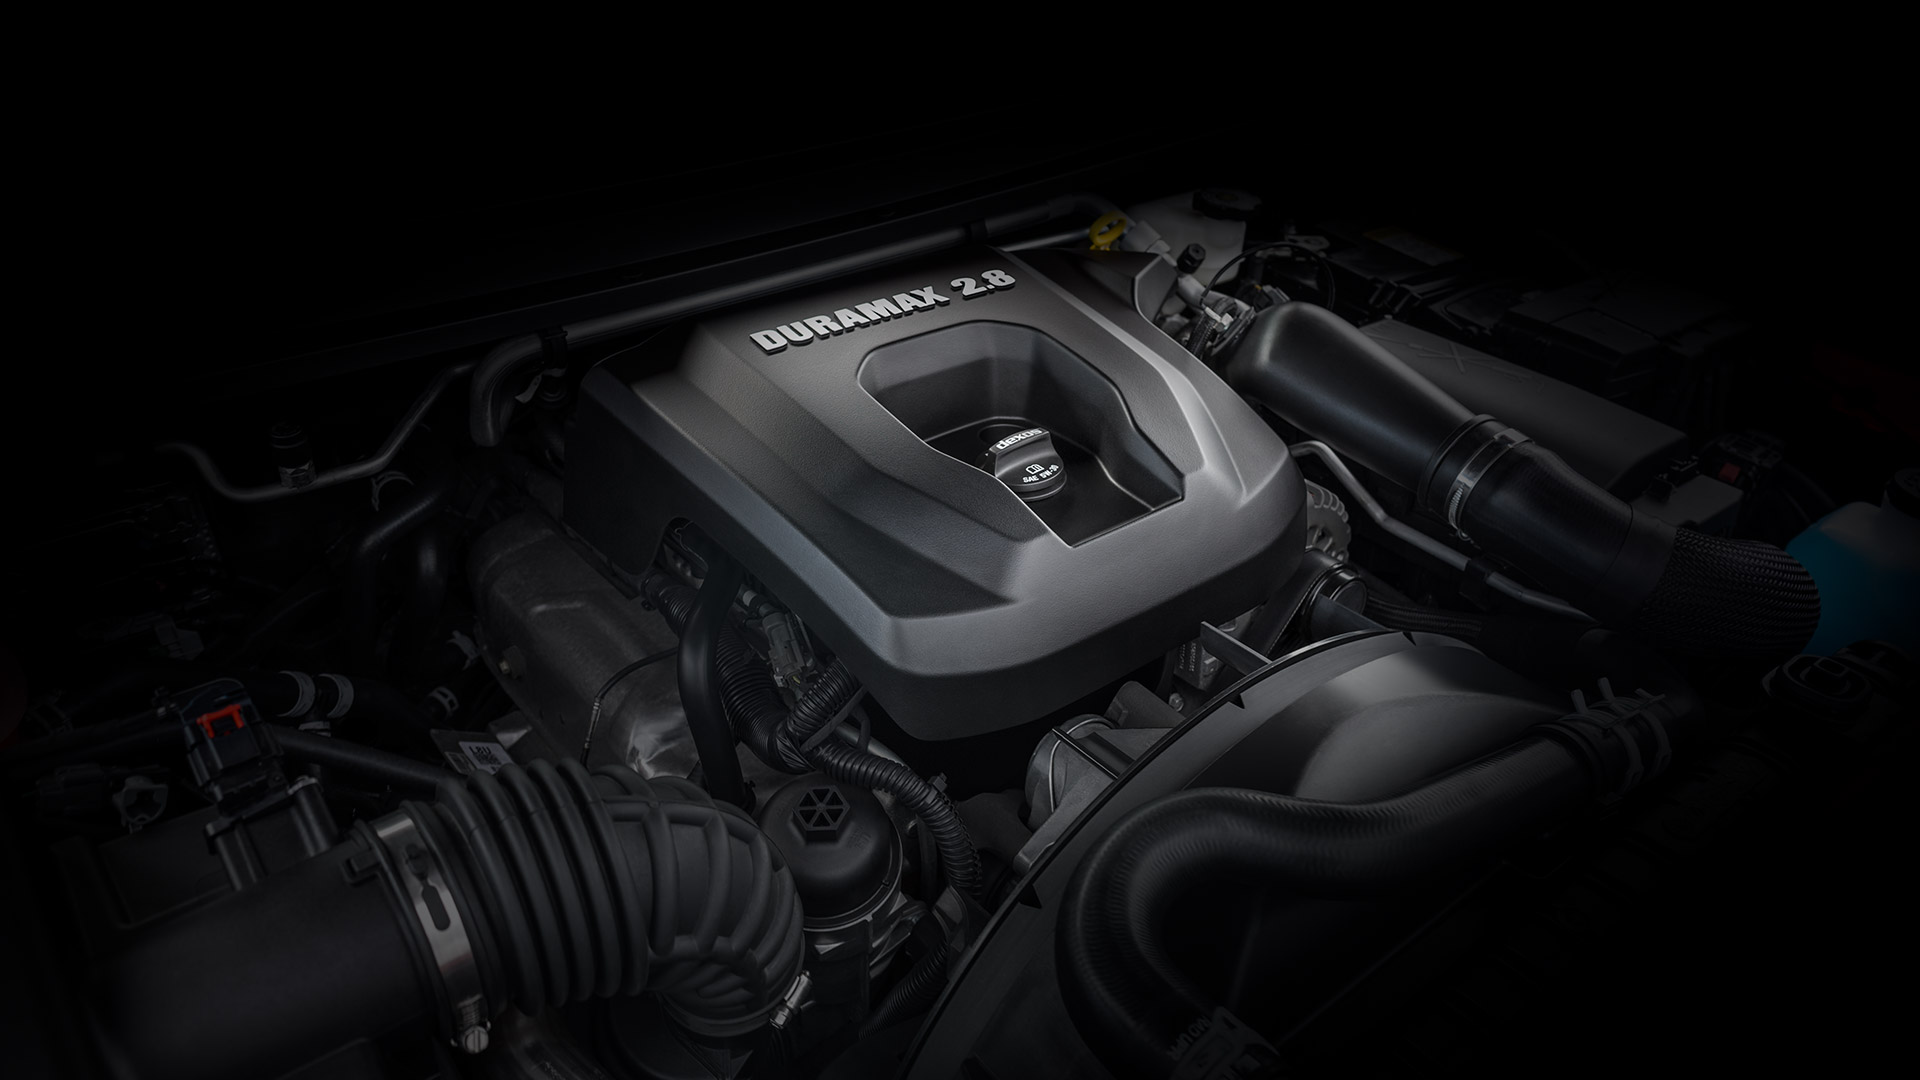 Duramax 2.8 liter Turbo-Diesel Engine